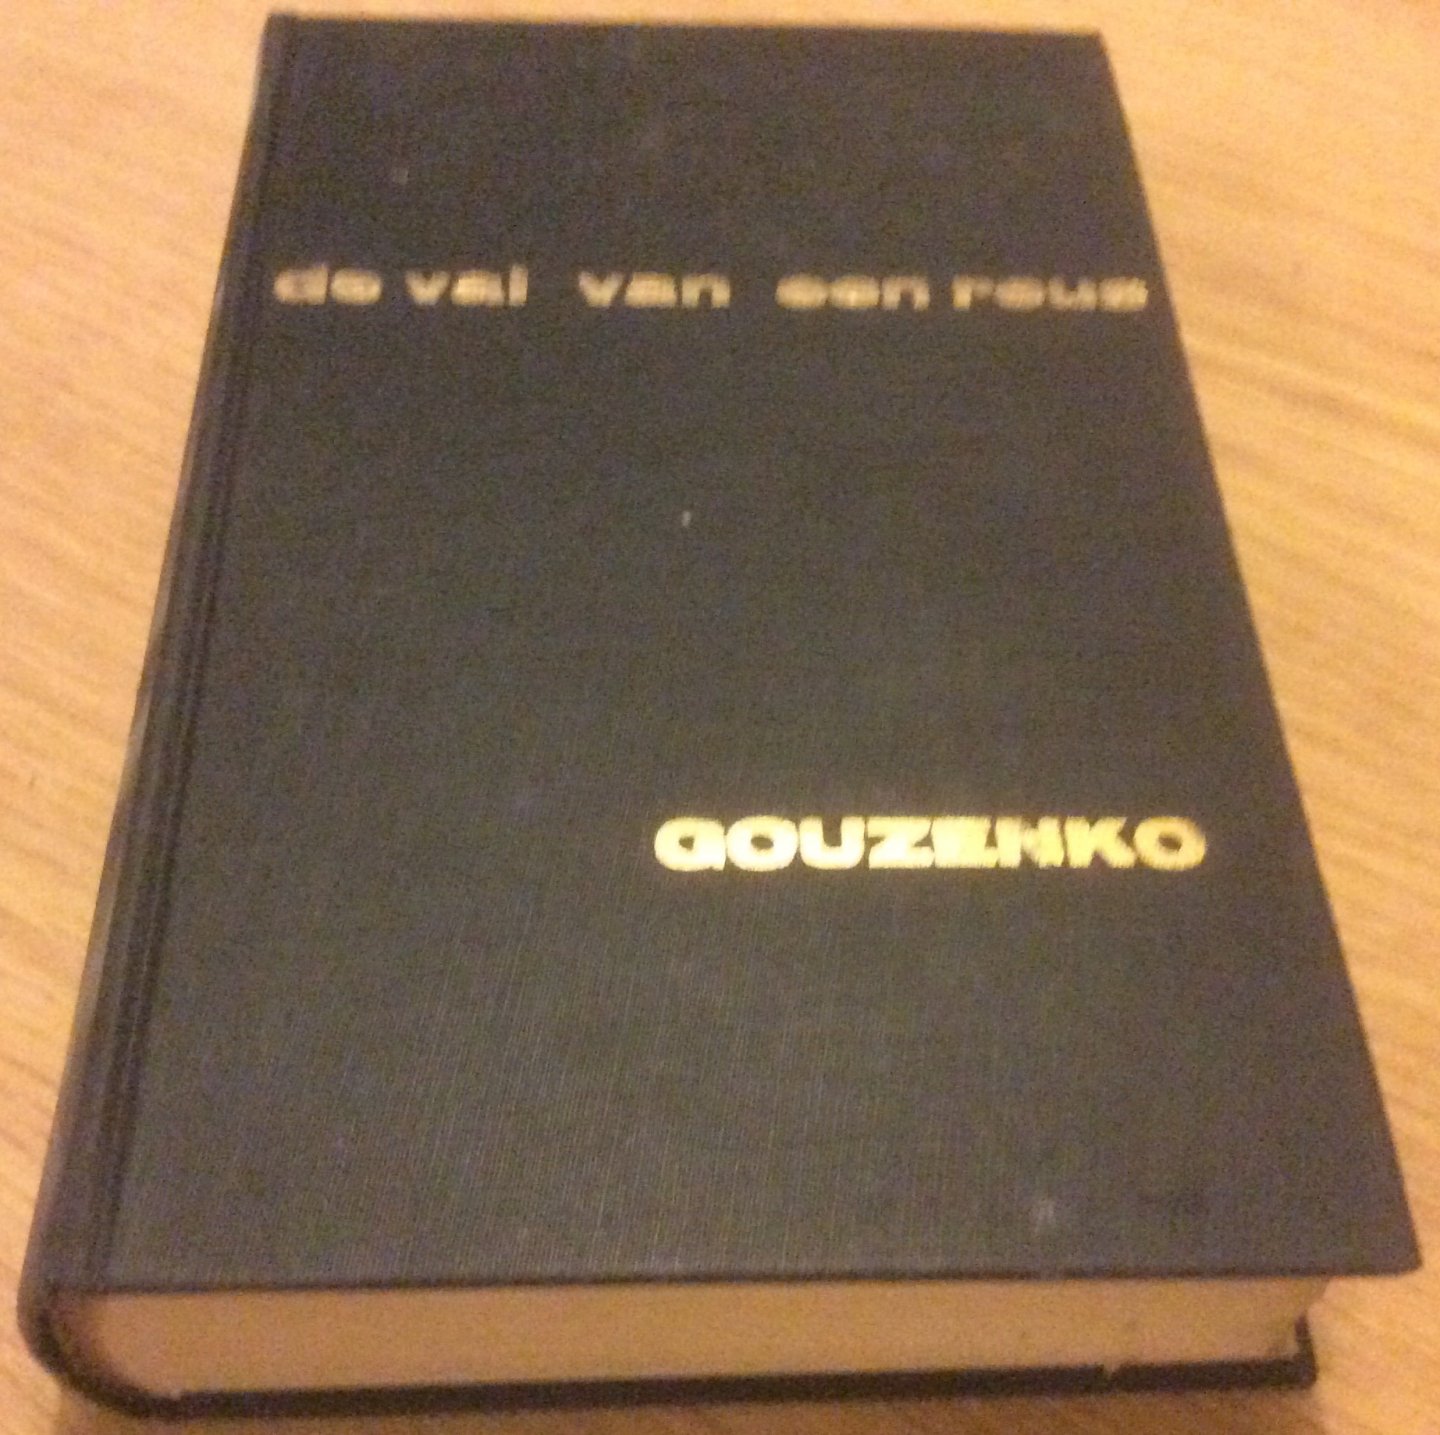 Gouzenko, Igor - De val van een reus